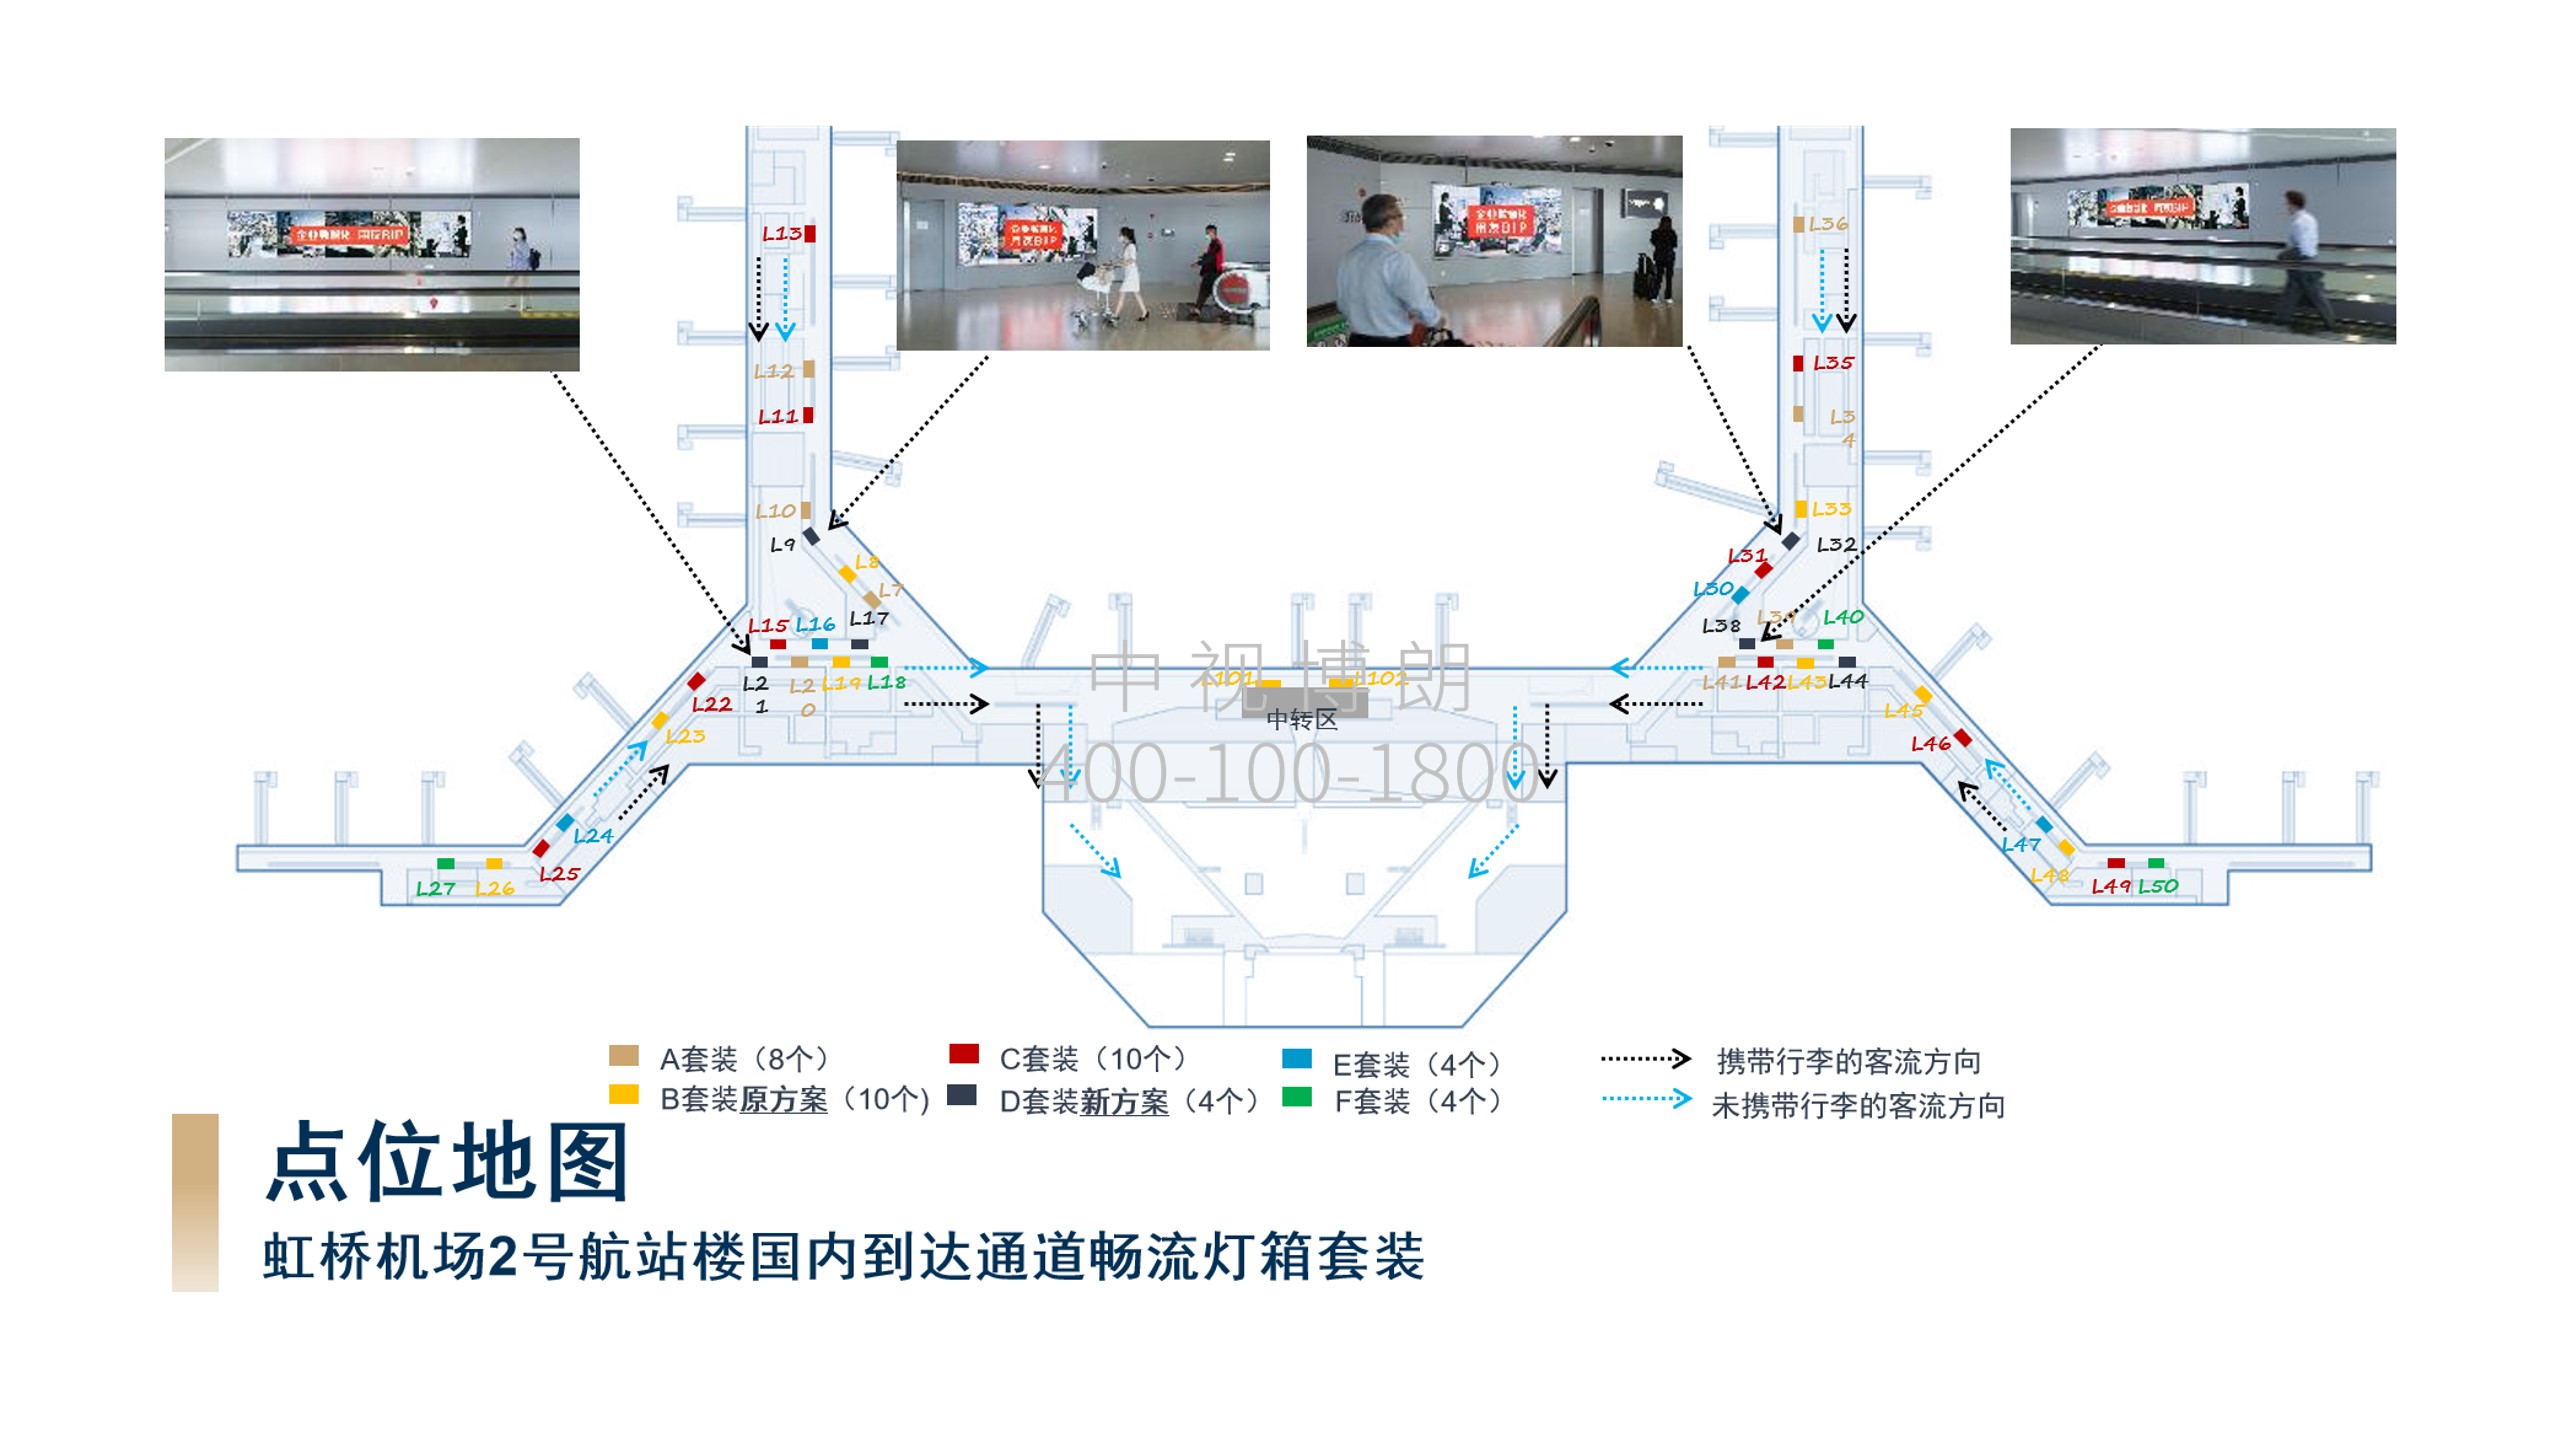 上海机场广告-虹桥T2到达通道灯箱套装点位图